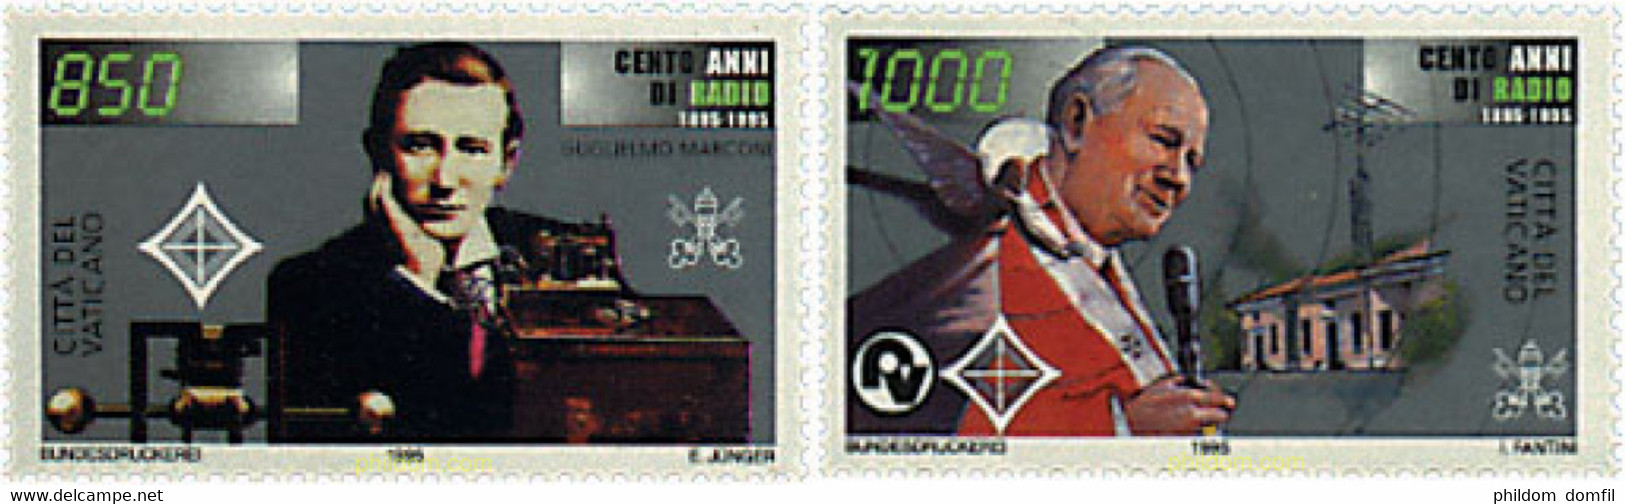 30694 MNH VATICANO 1995 CENTENARIO DE LA RADIO - Oblitérés